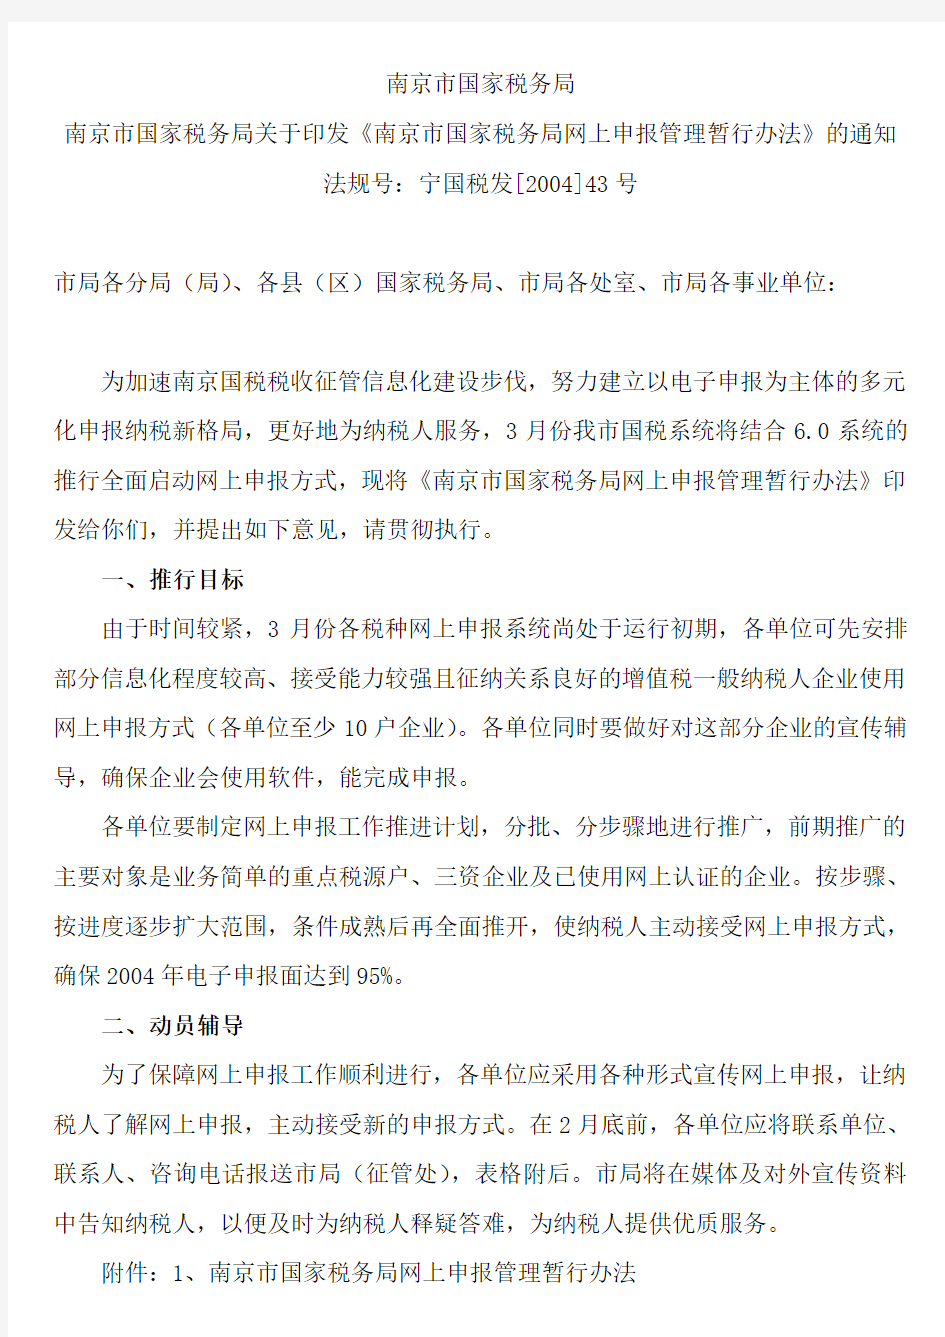 南京市国家税务局网上申报管理暂行办法